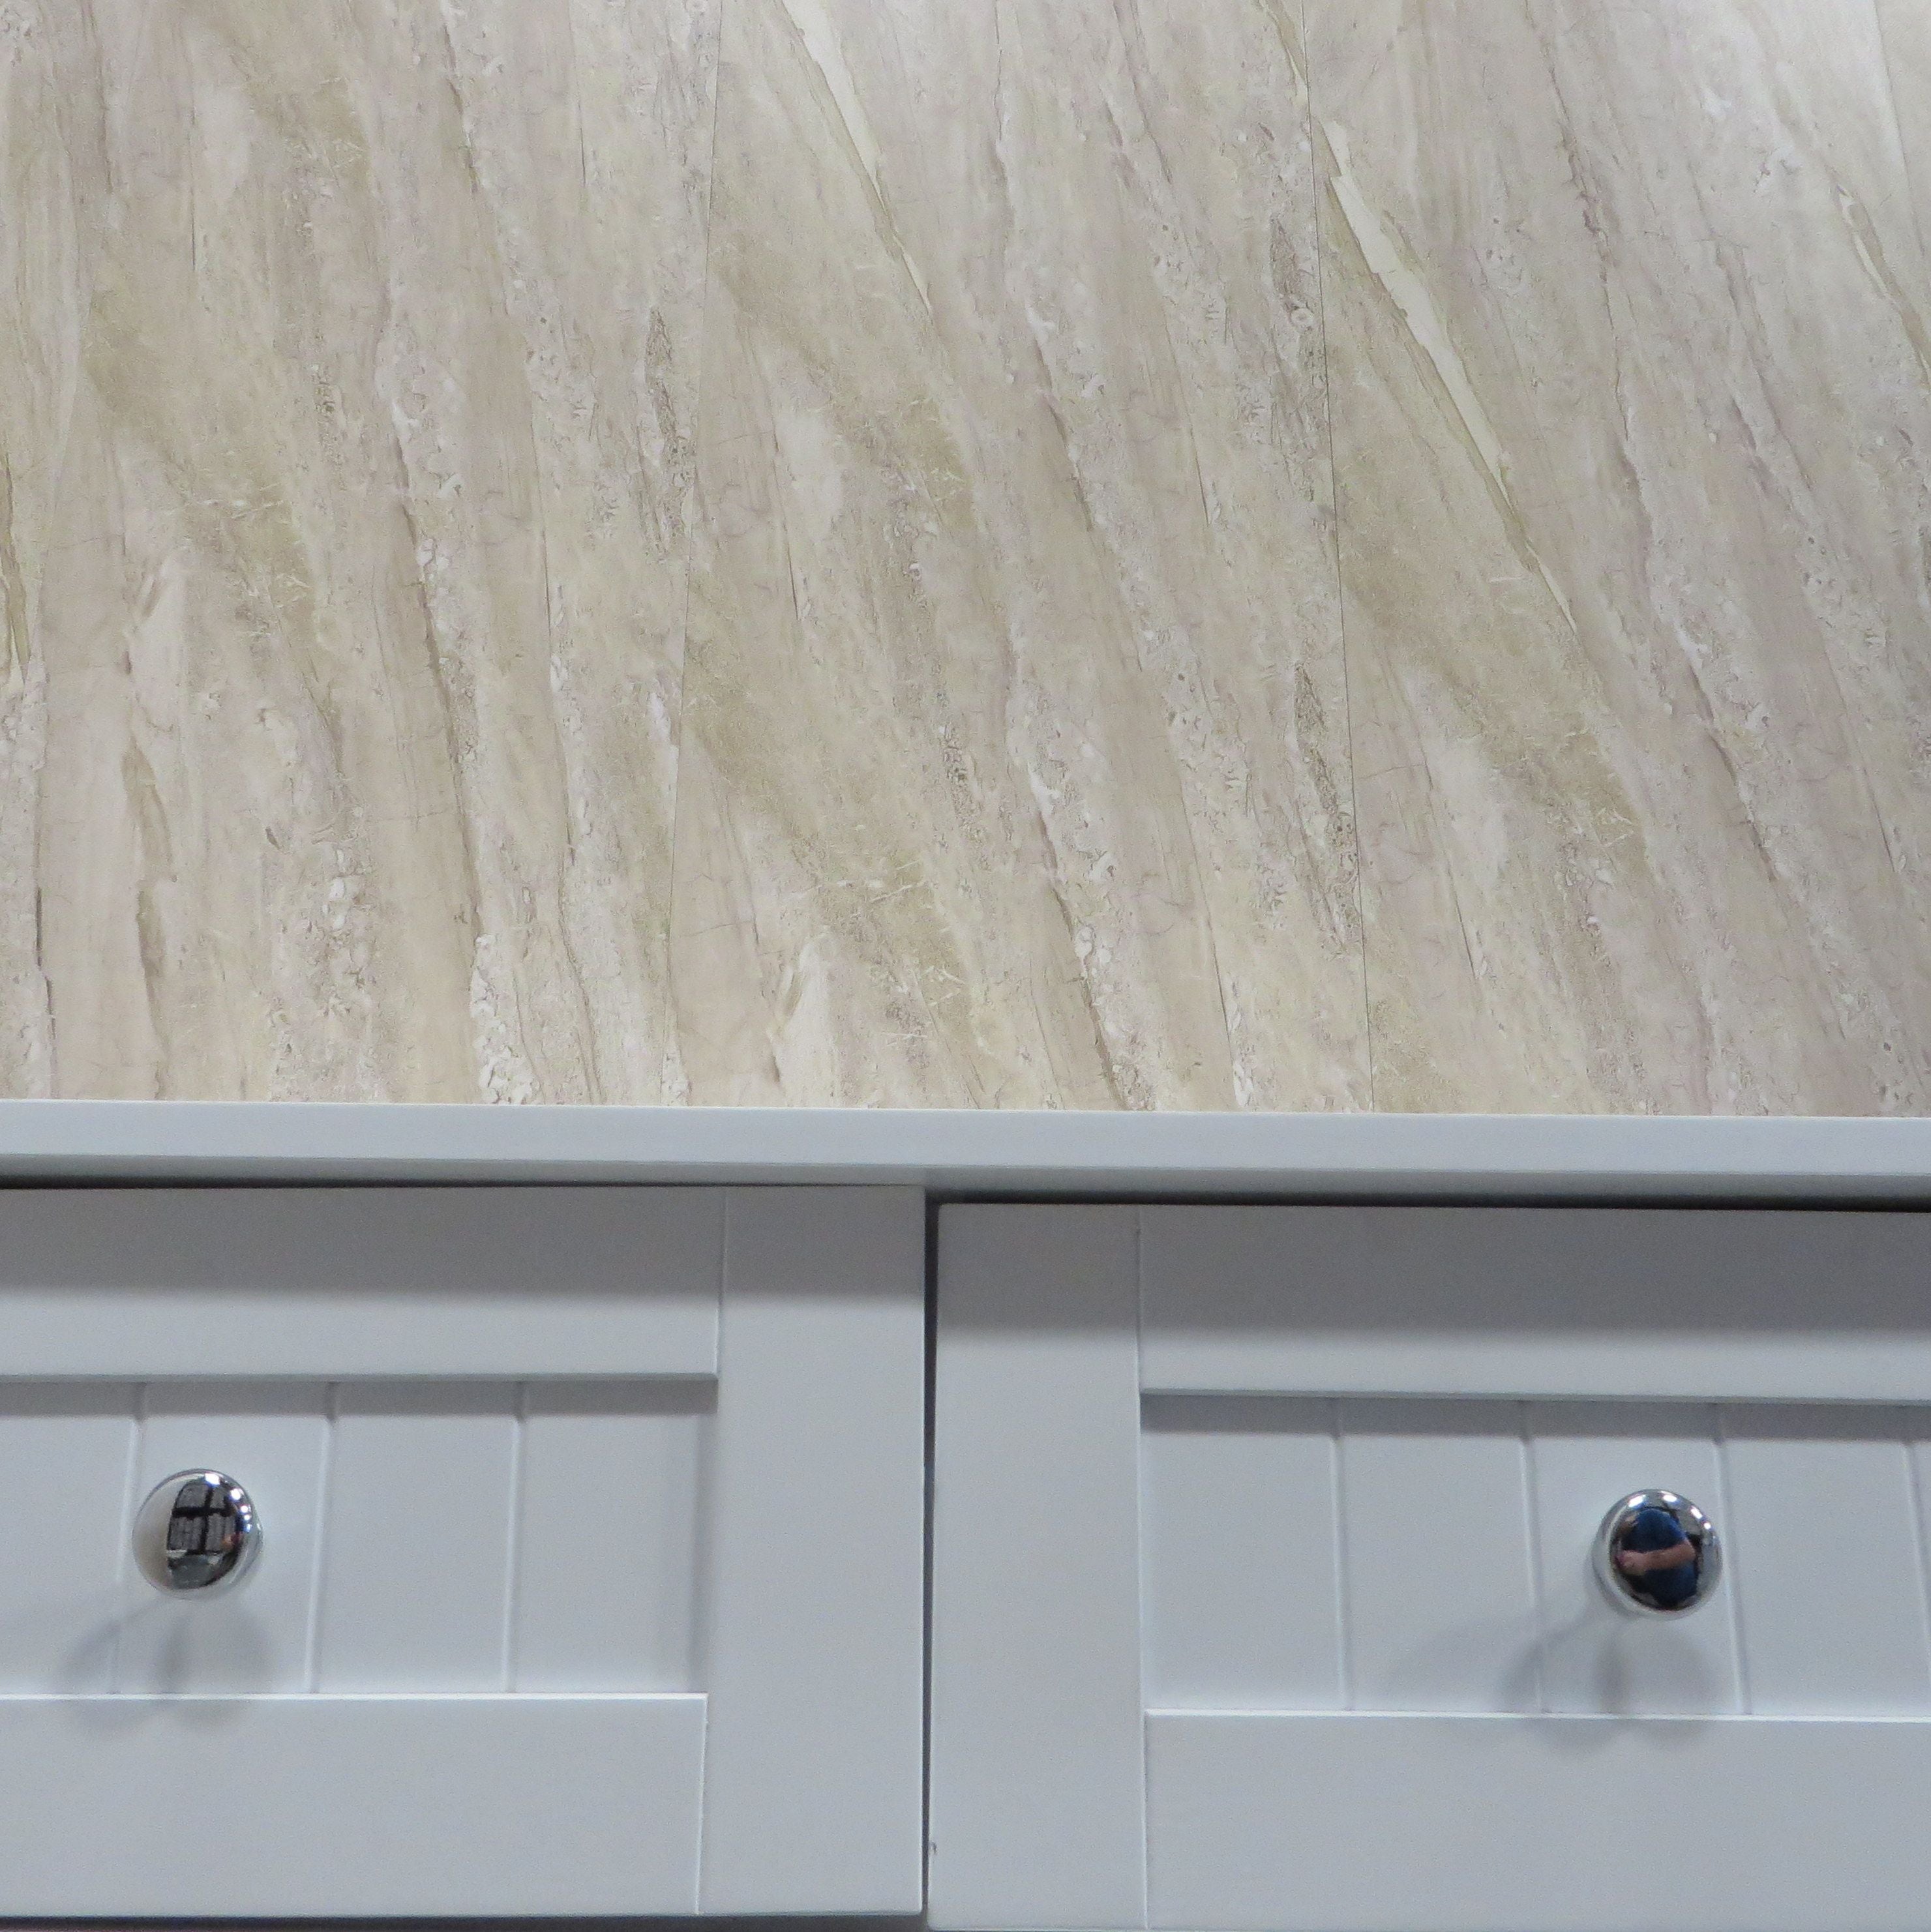 Sample of Beige Natural Sandstone 10mm Bathroom Cladding PVC Shower Panels